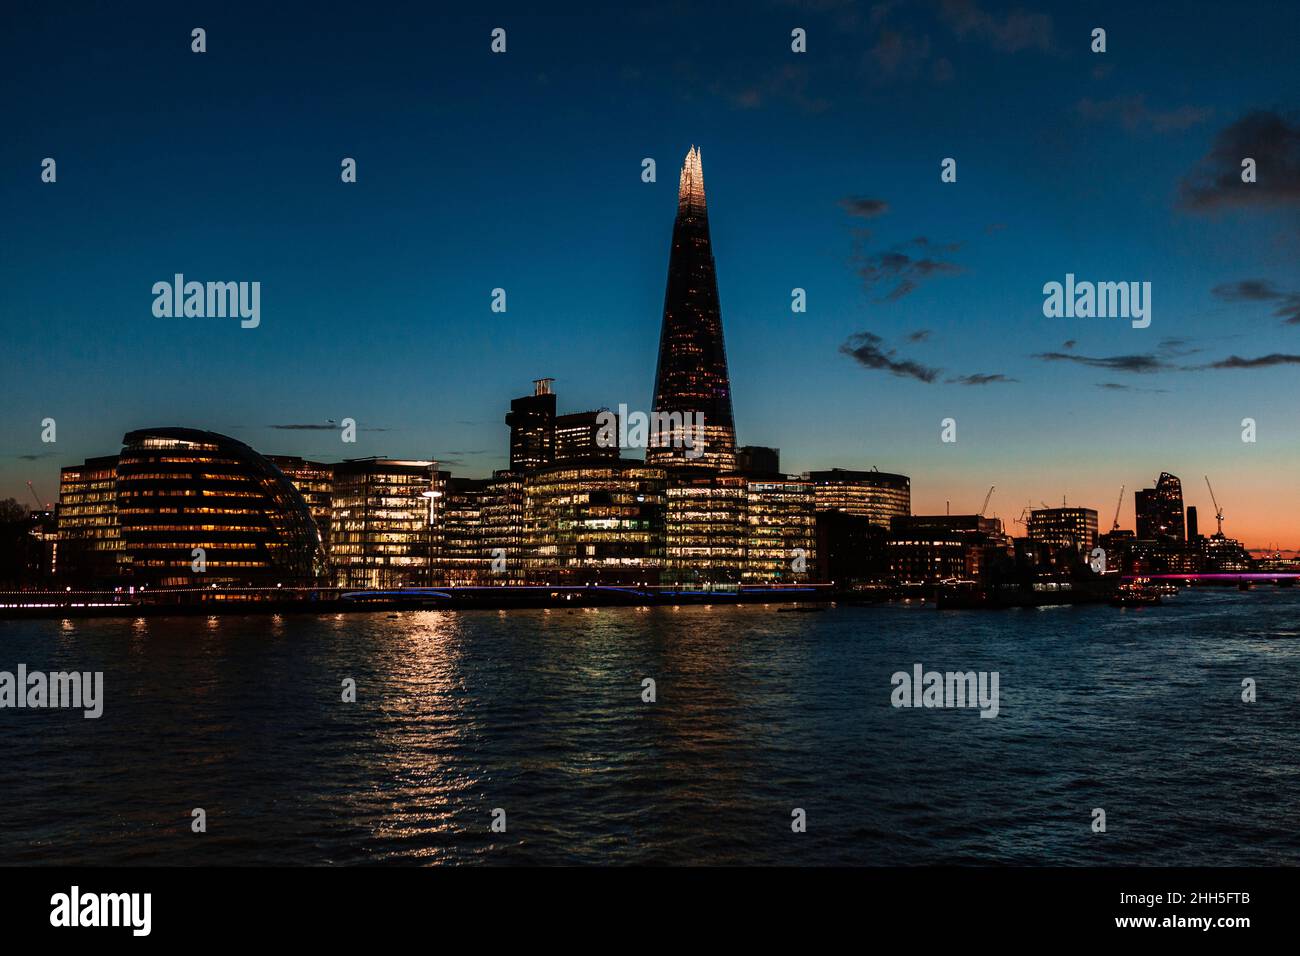 Edifici moderni illuminati sul Tamigi in città al tramonto, Londra, Inghilterra, Regno Unito Foto Stock